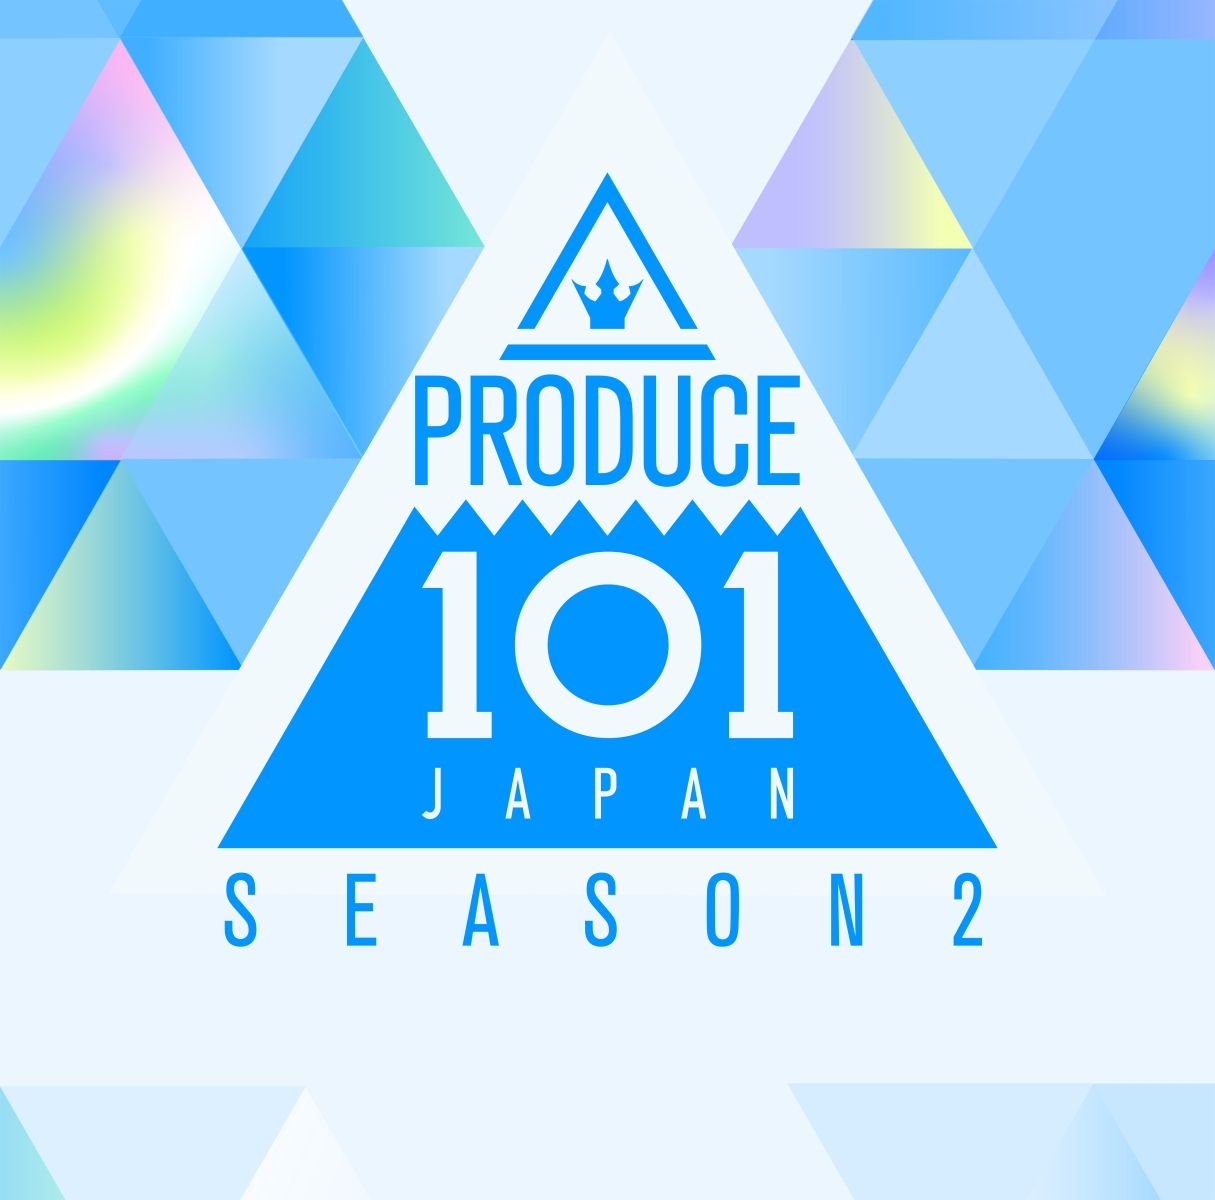 楽天ブックス: 「PRODUCE 101 JAPAN SEASON 2 - PRODUCE 101 JAPAN